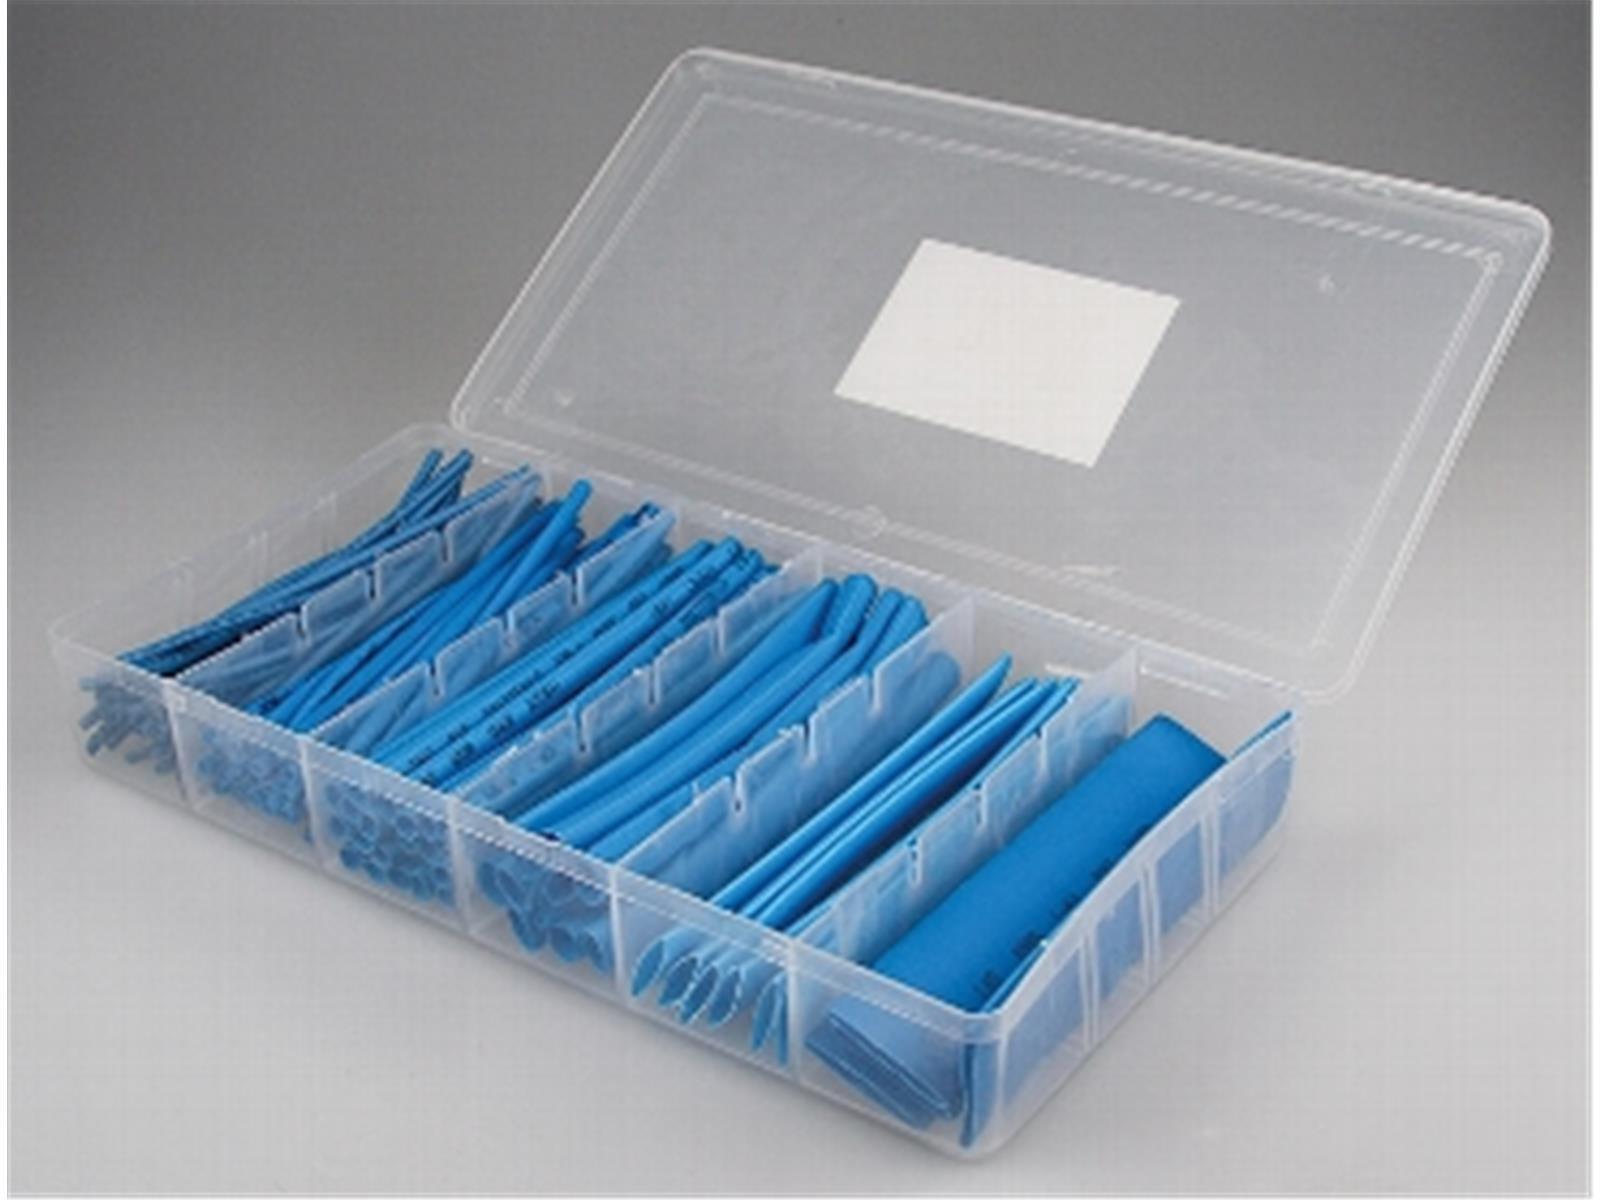 Schrumpfschlauch-Sortiment, 100-teilig in praktischer Box, blau